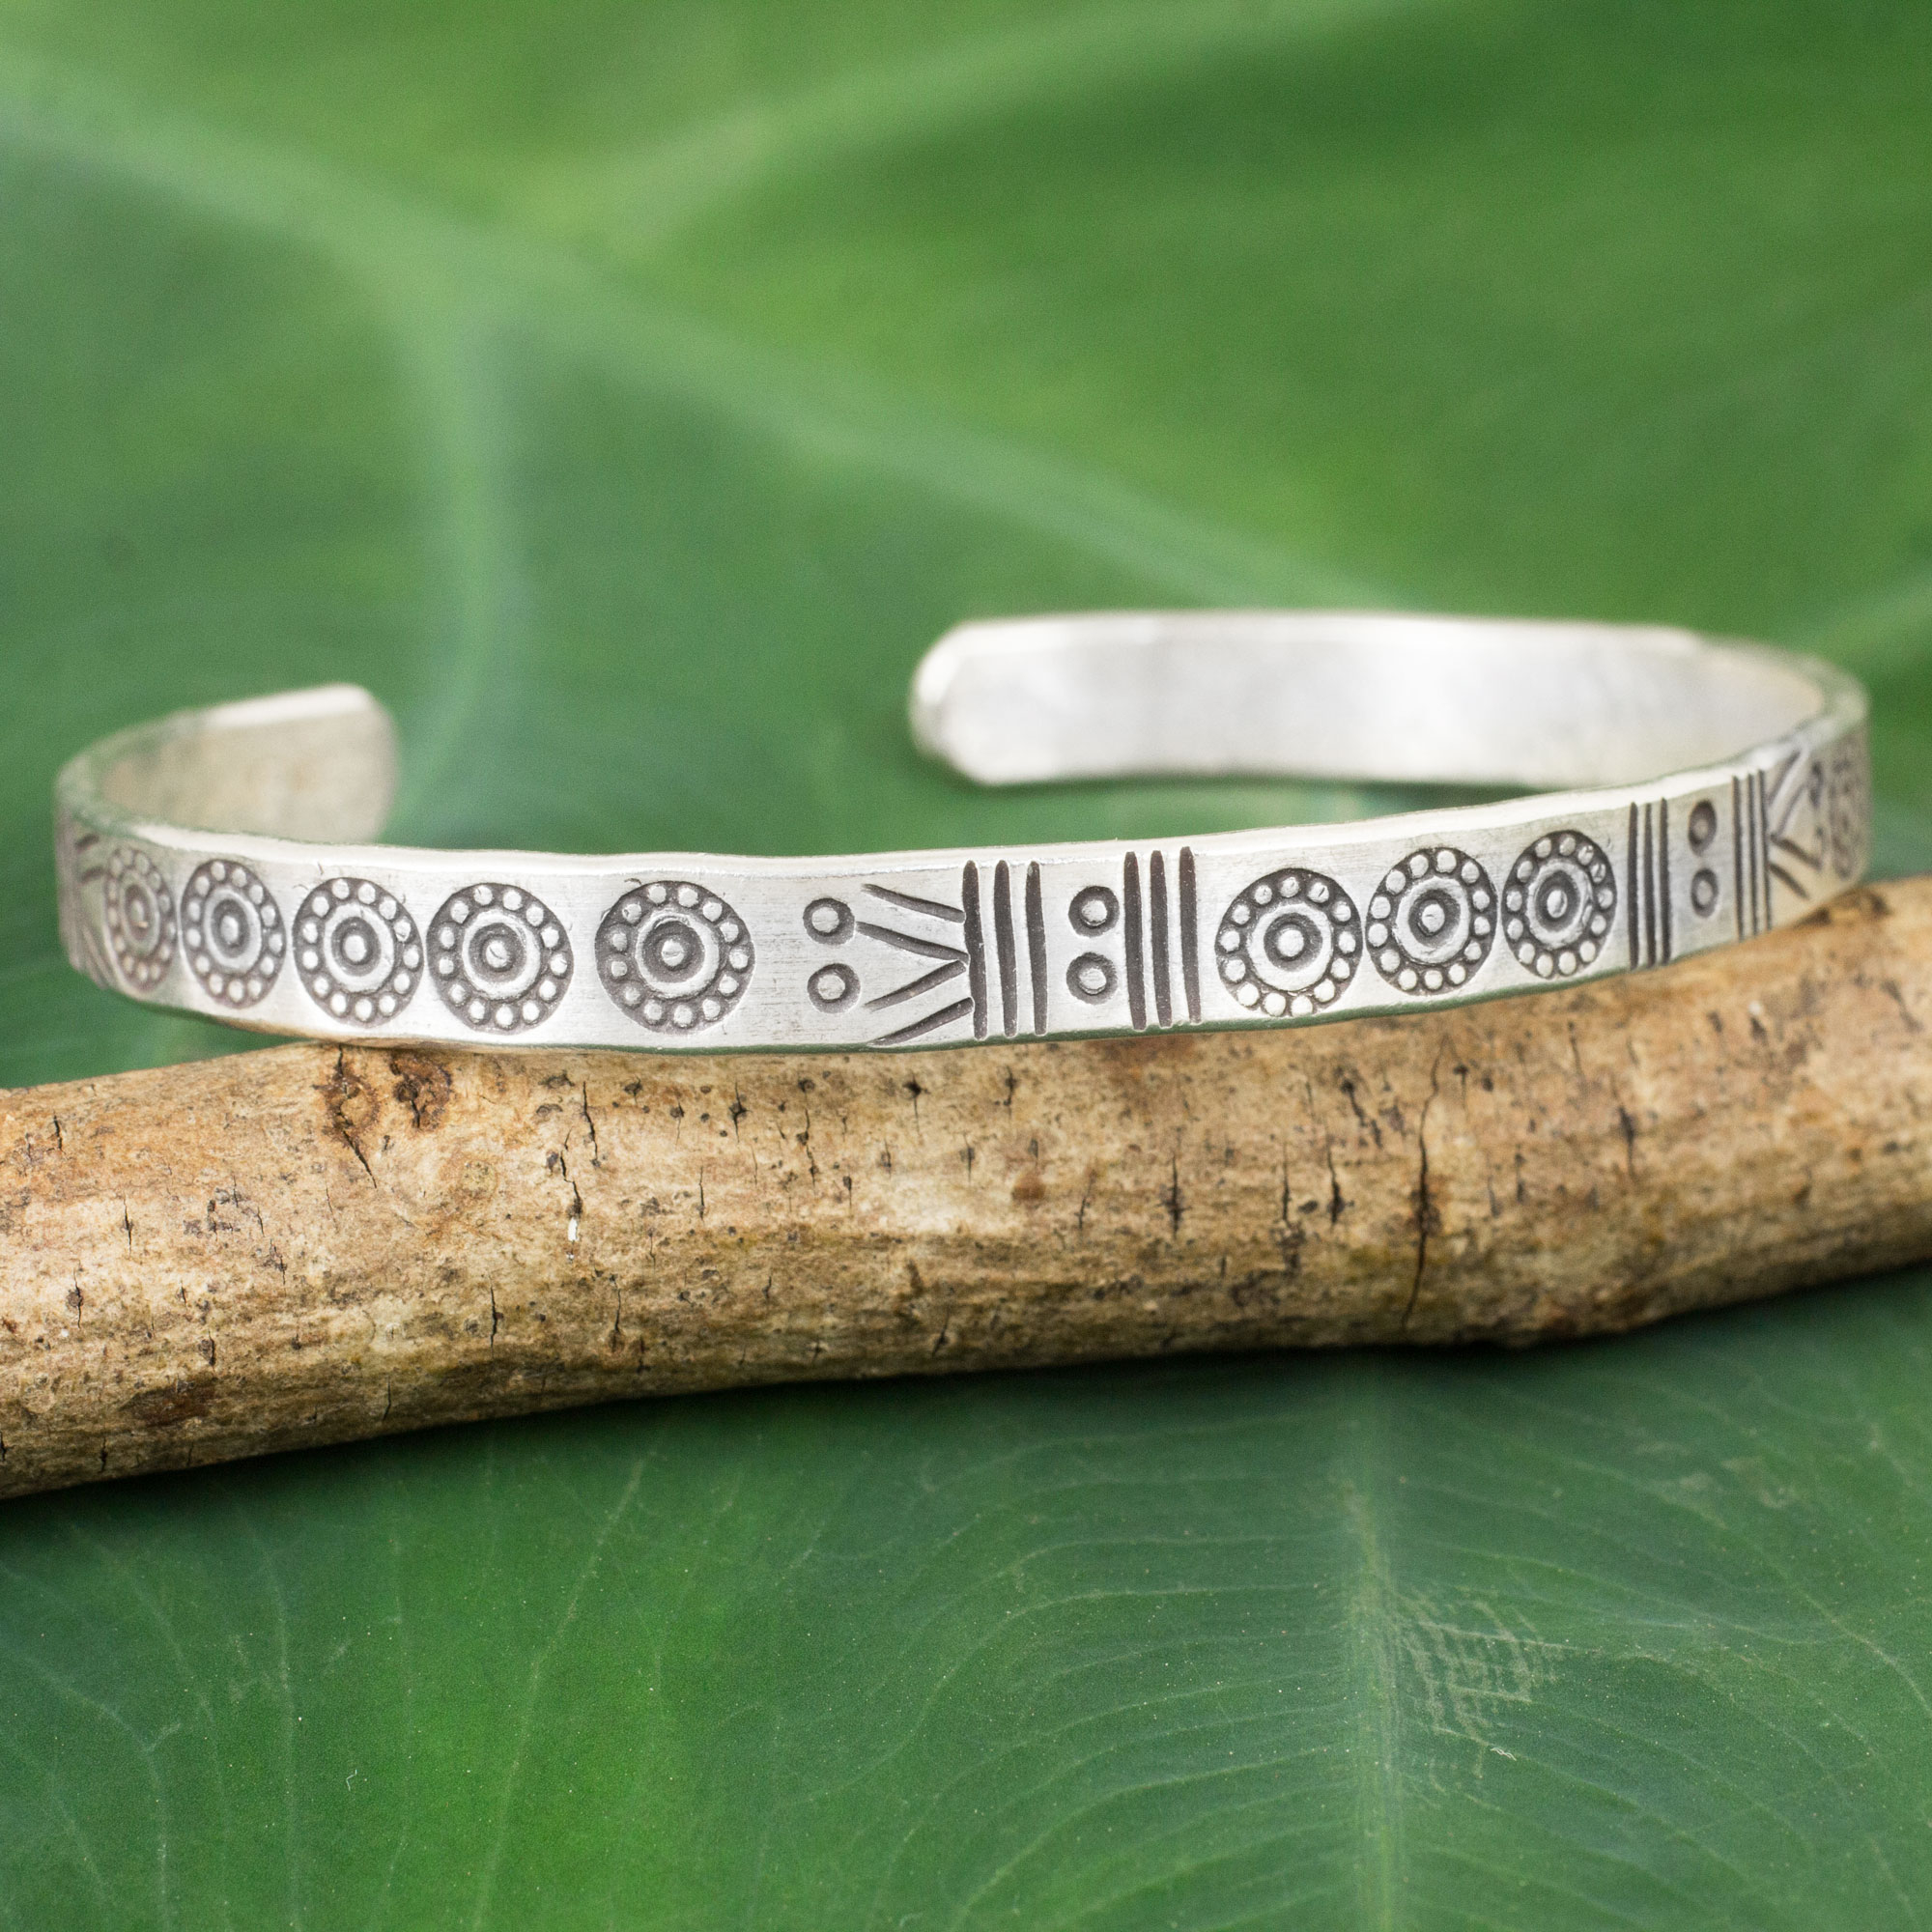 Thailand Karen Hill Tribe Stamped Cuff Bracelet in Silver - Ancestral ...